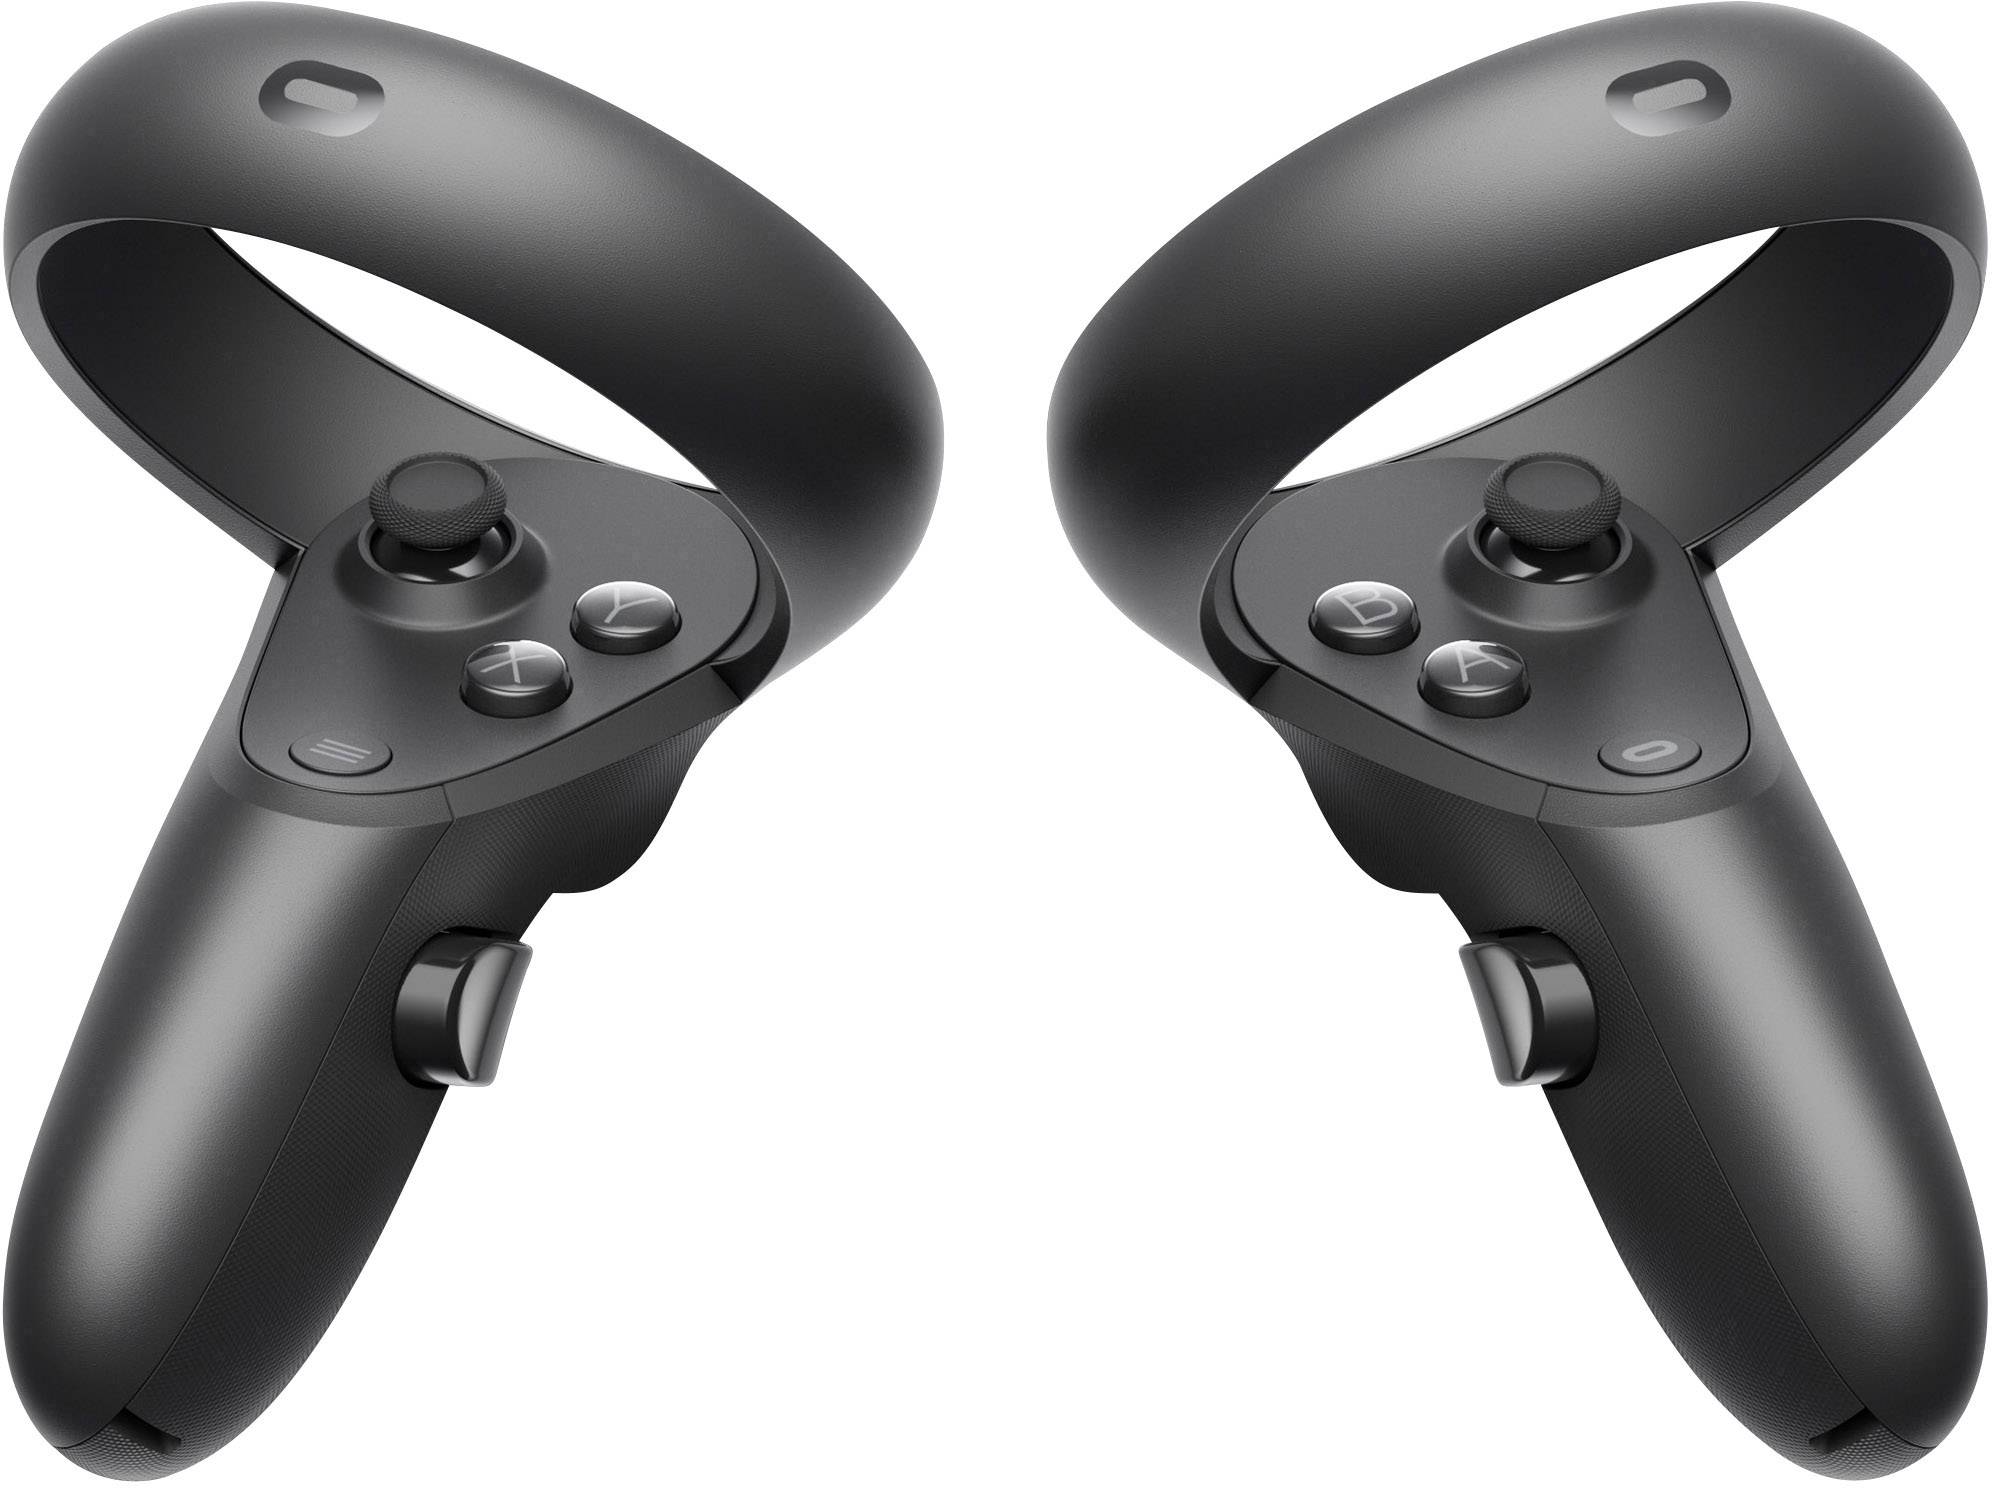 Vr touch. VR контроллеры Oculus Touch. VR очки Oculus Rift s. Oculus Rift s контроллеры. Oculus Touch (контроллеры для Oculus Rift cv1 + сенсор).